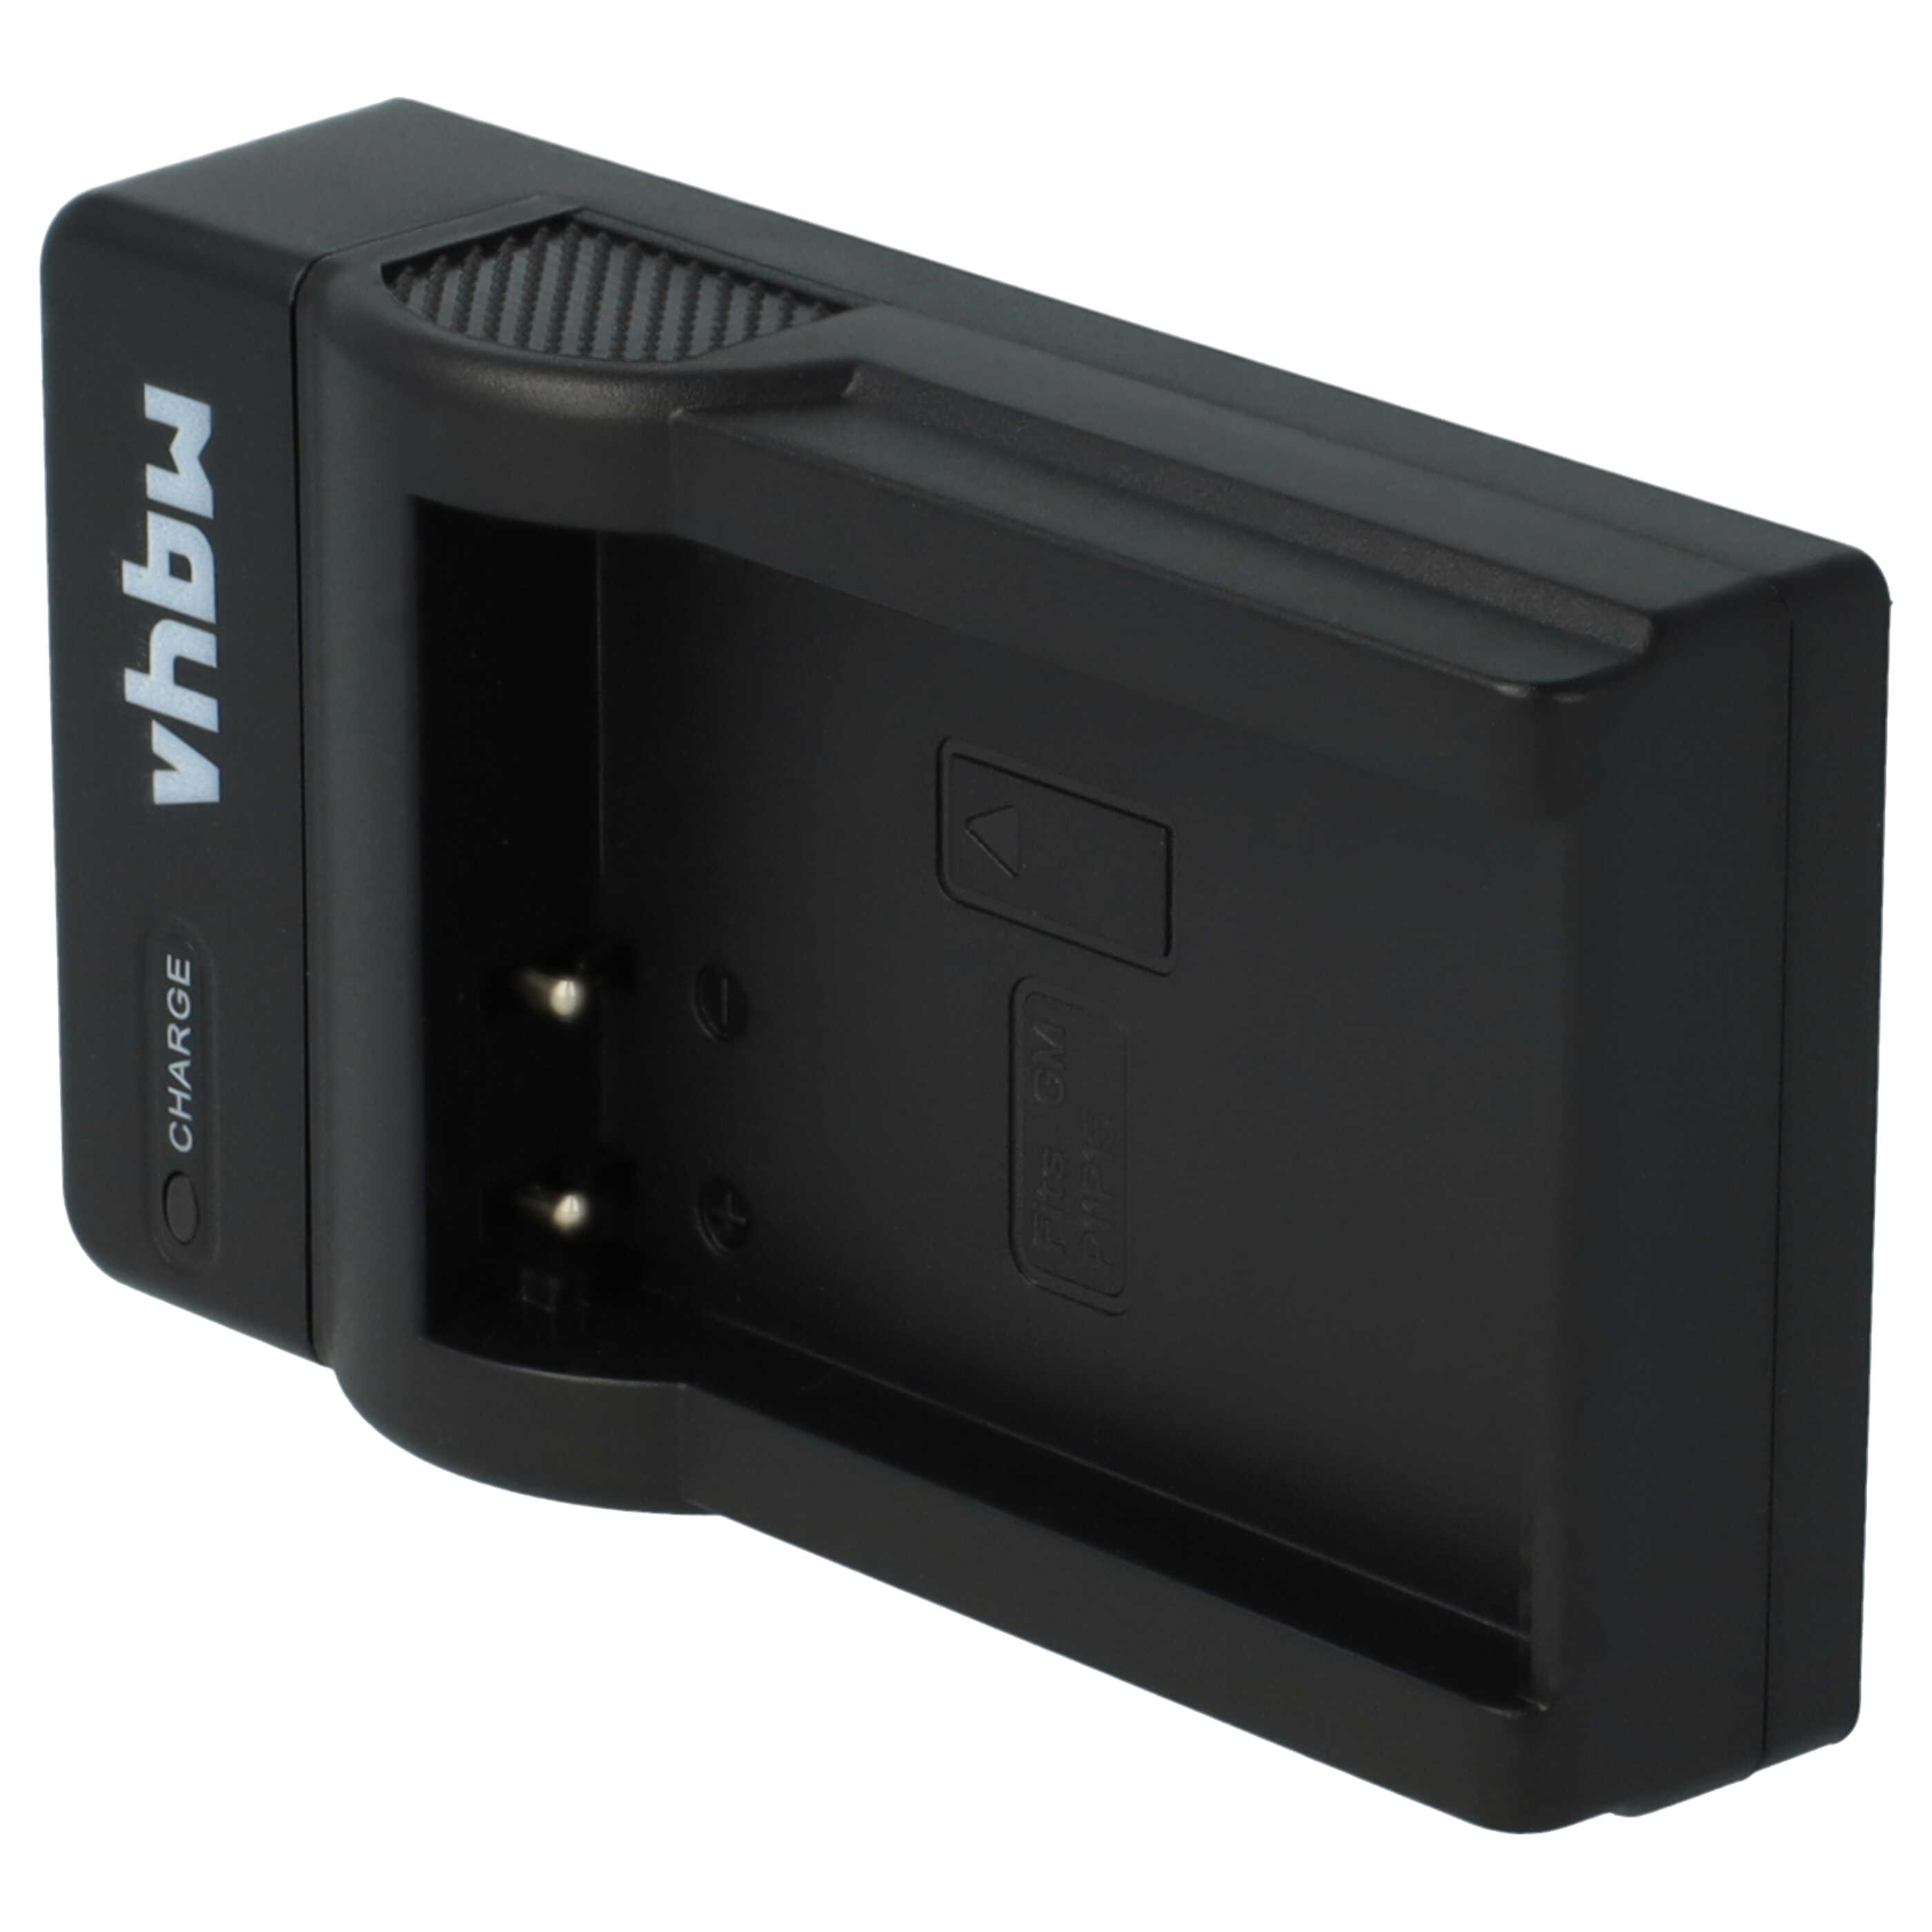 Akku Ladegerät passend für E1GR Kamera u.a. - 0,5 A, 4,2 V